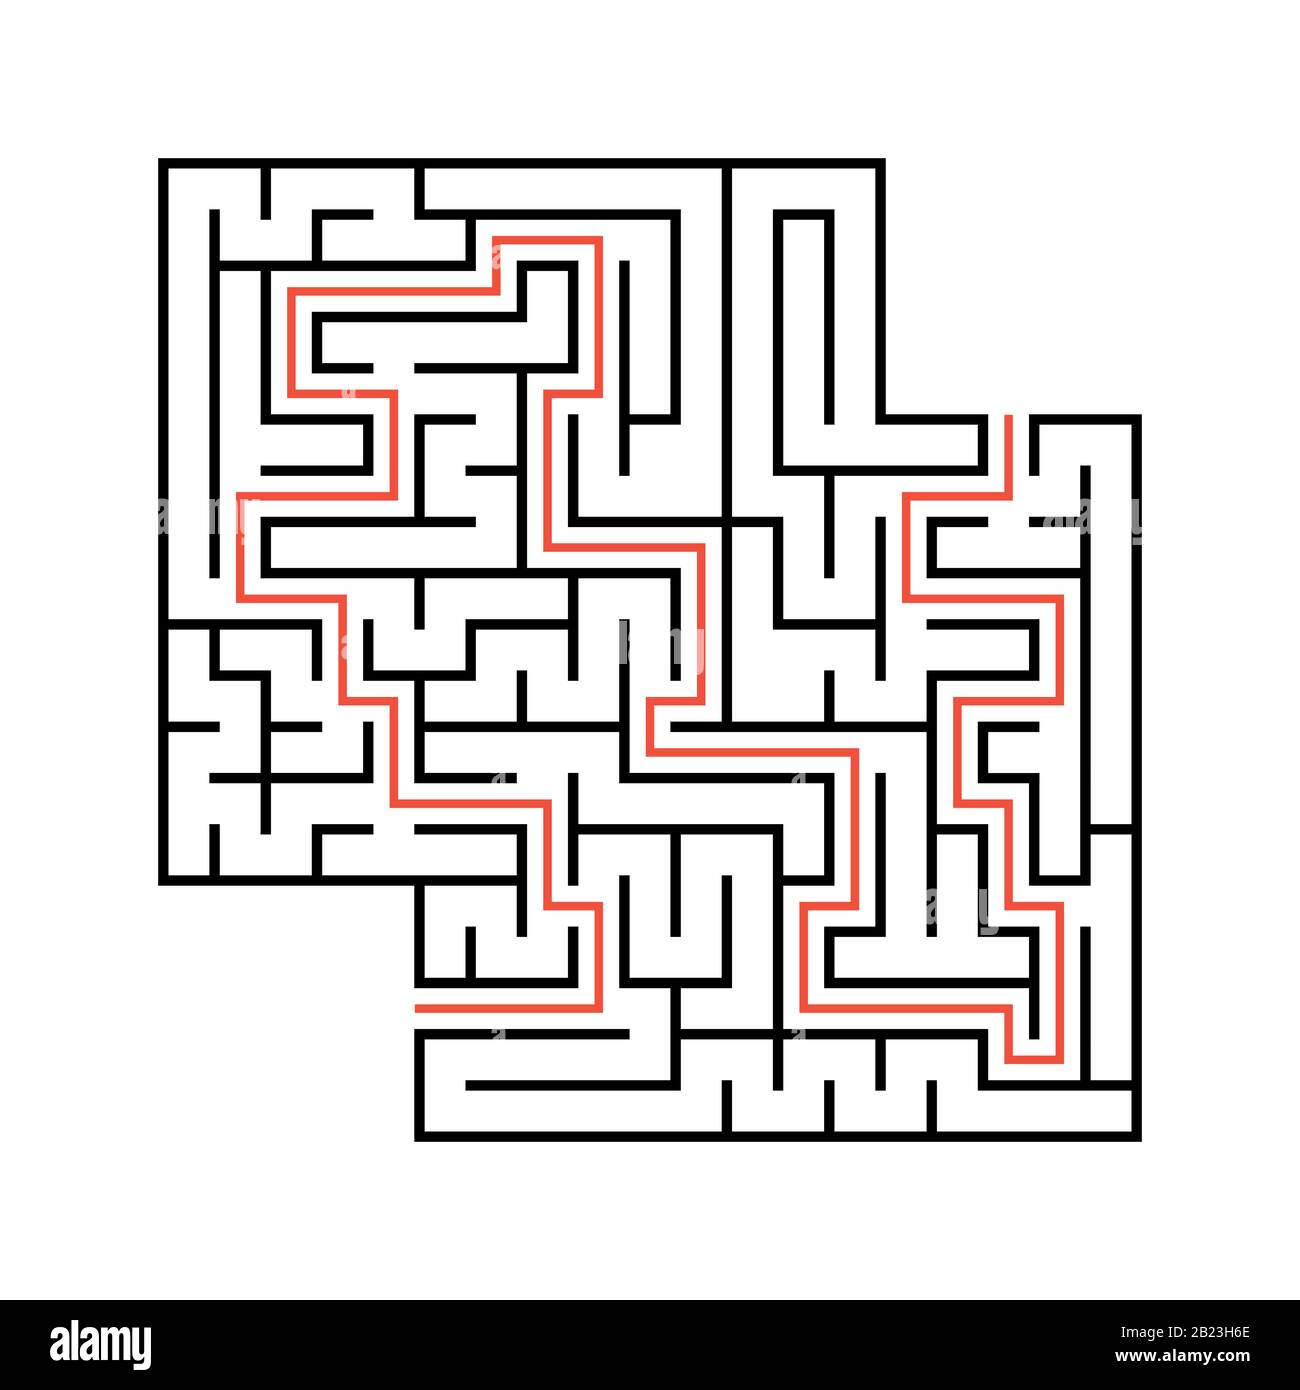 Labirinto quadrato astratto con ingresso e uscita. Semplice immagine vettoriale piatta isolata su sfondo bianco. Con un luogo per i disegni. Con la AN Illustrazione Vettoriale